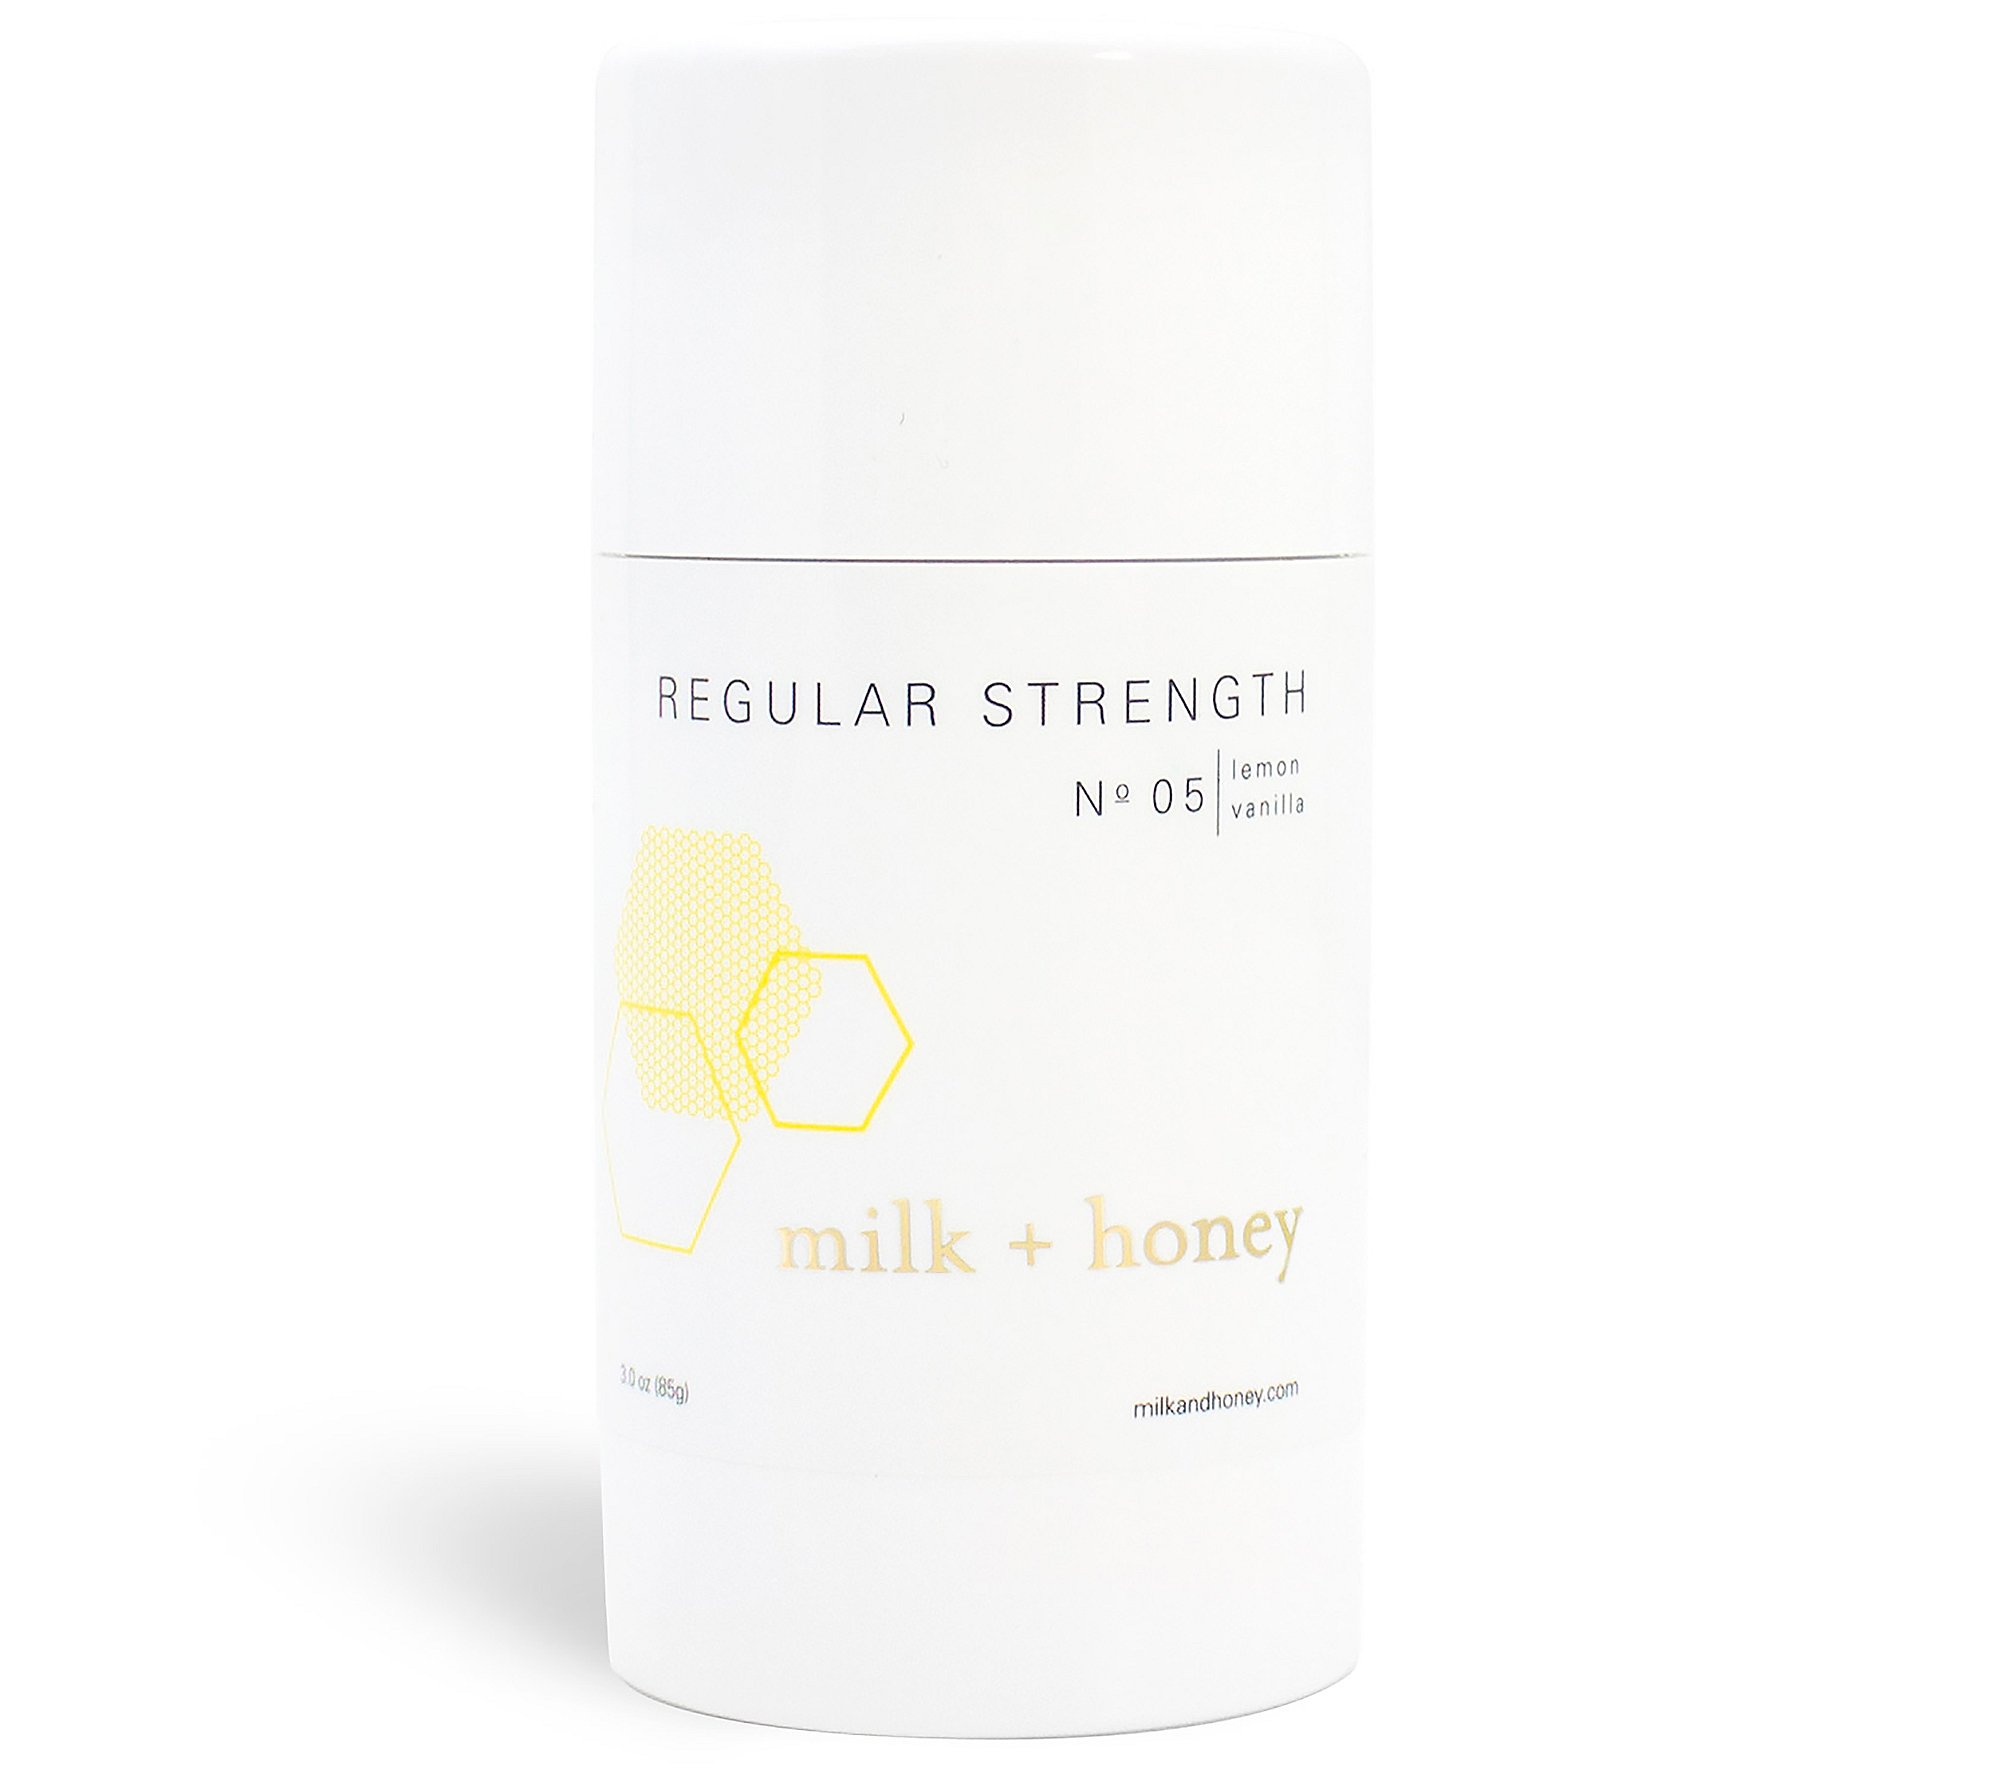 milk + honey Regular Strength Deodorant, No.05 Lemon + Vanilla